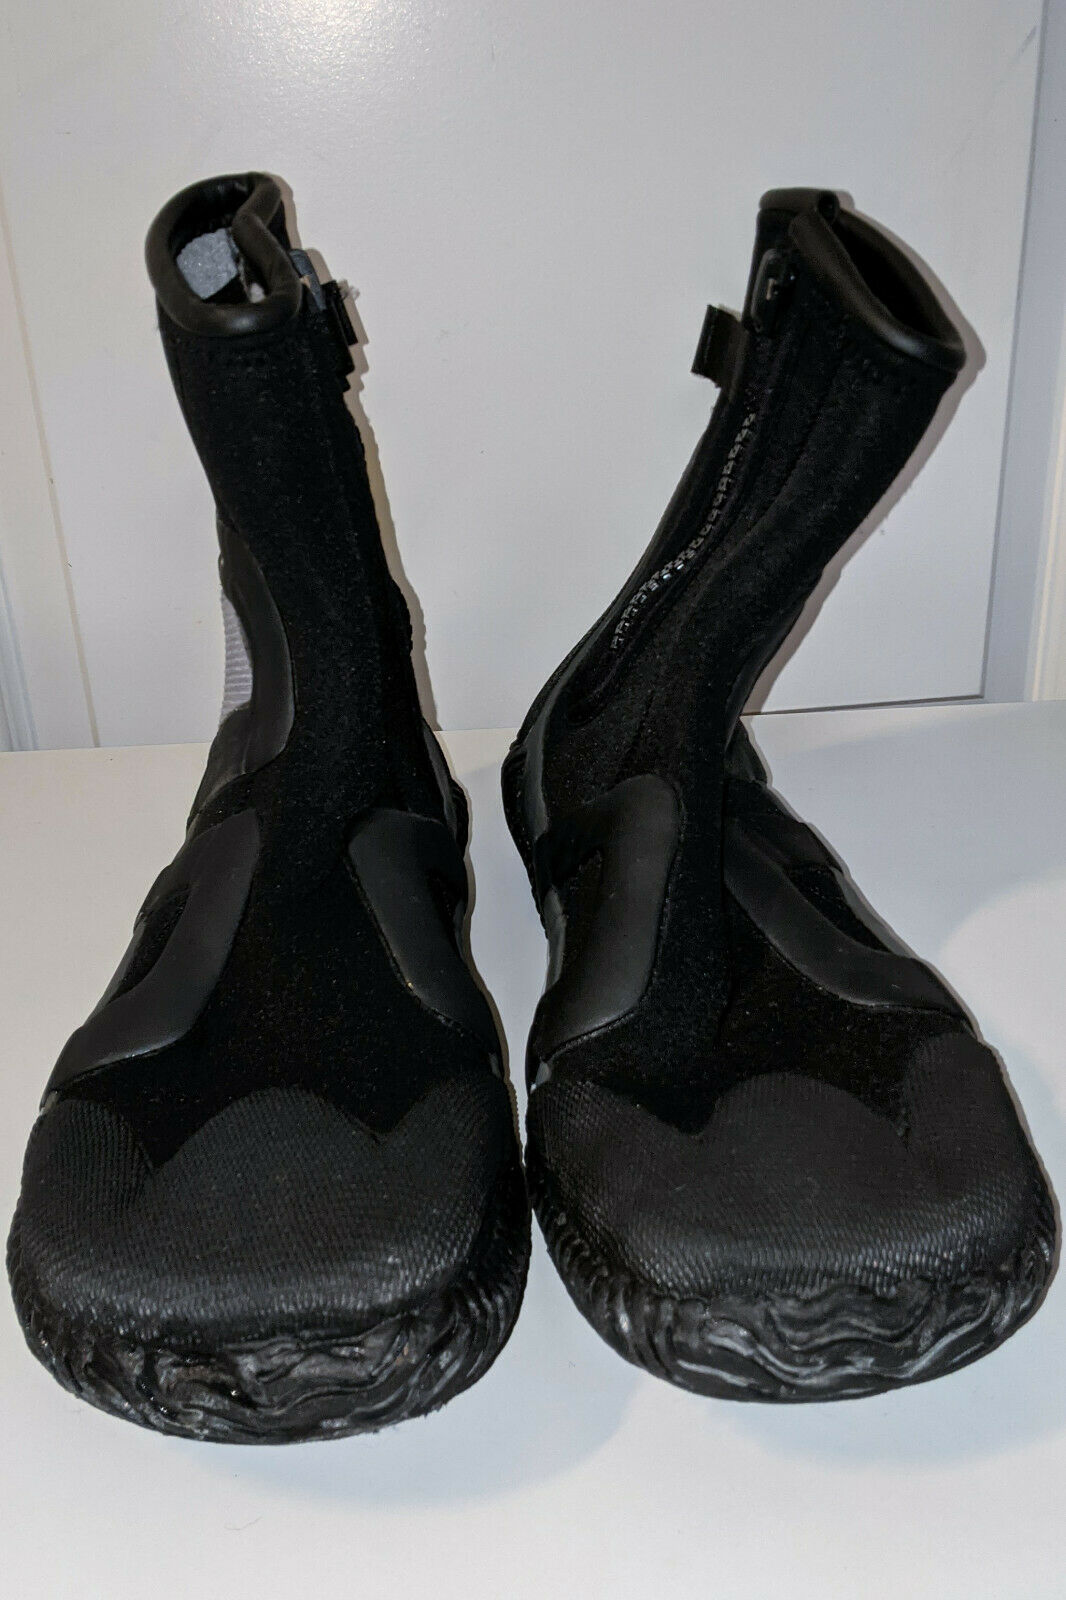 Nrs Vaporloft Black/gray Paddle Wet-shoe Mens - Size 12